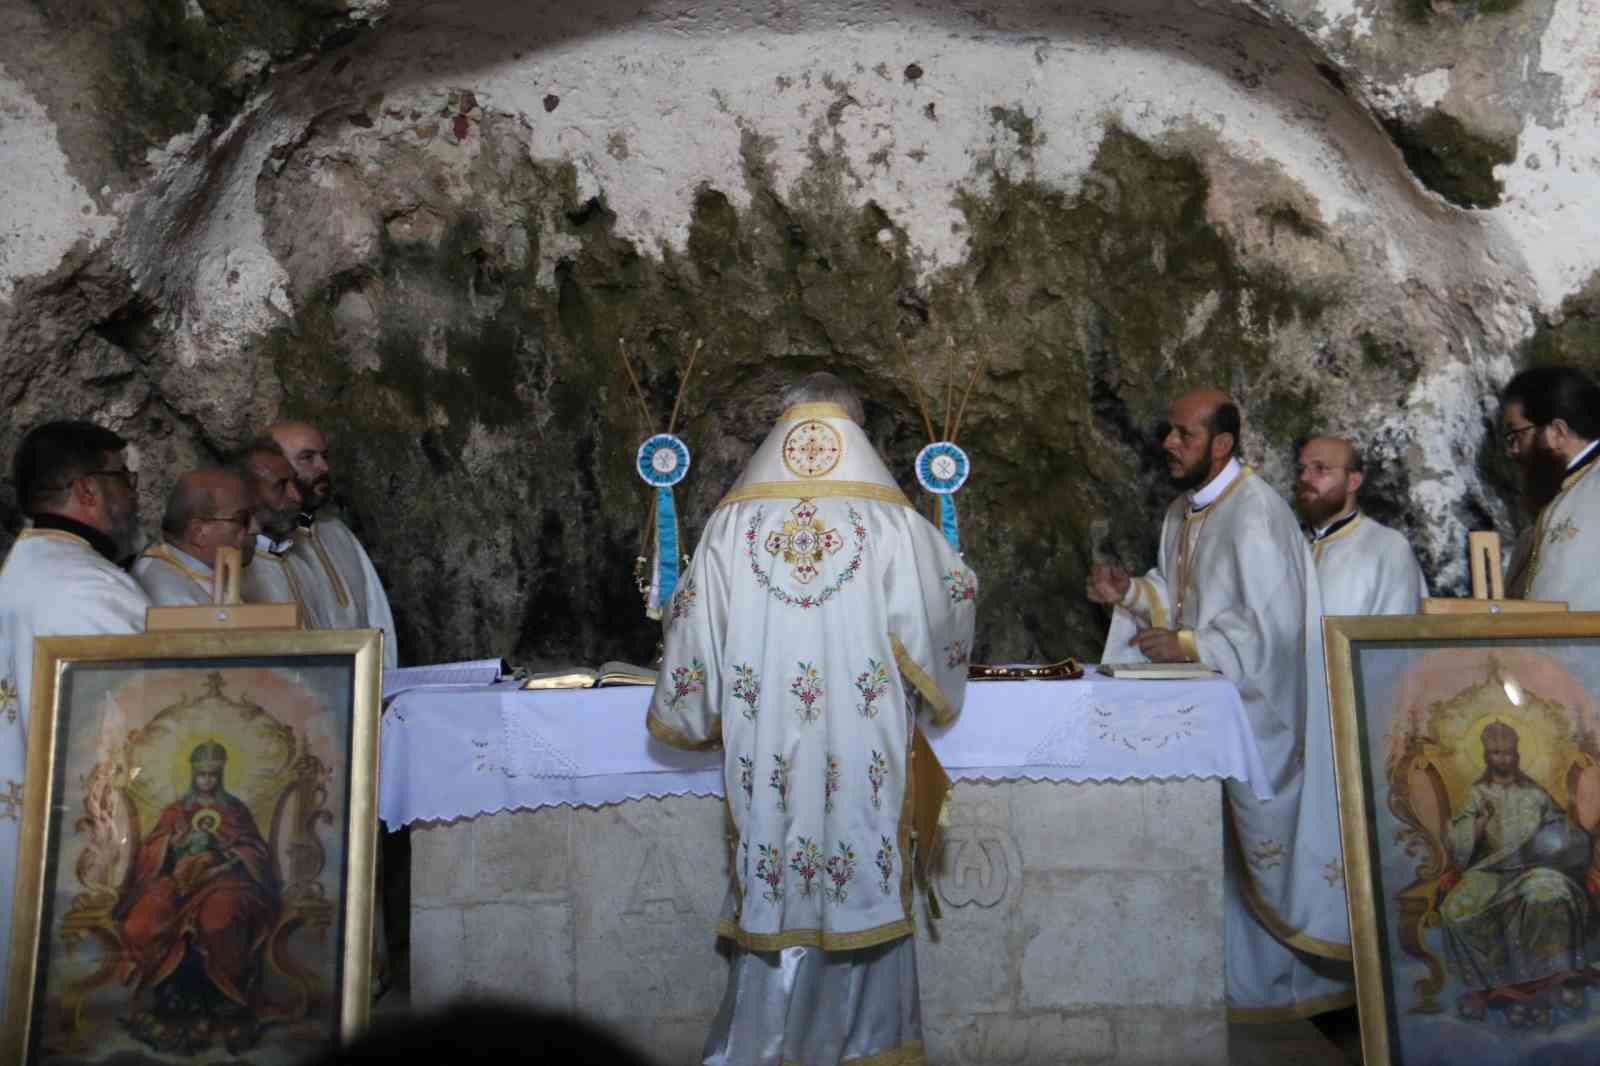 Mağara içindeki St. Pierre Kilisesi’nde bayram ayini
